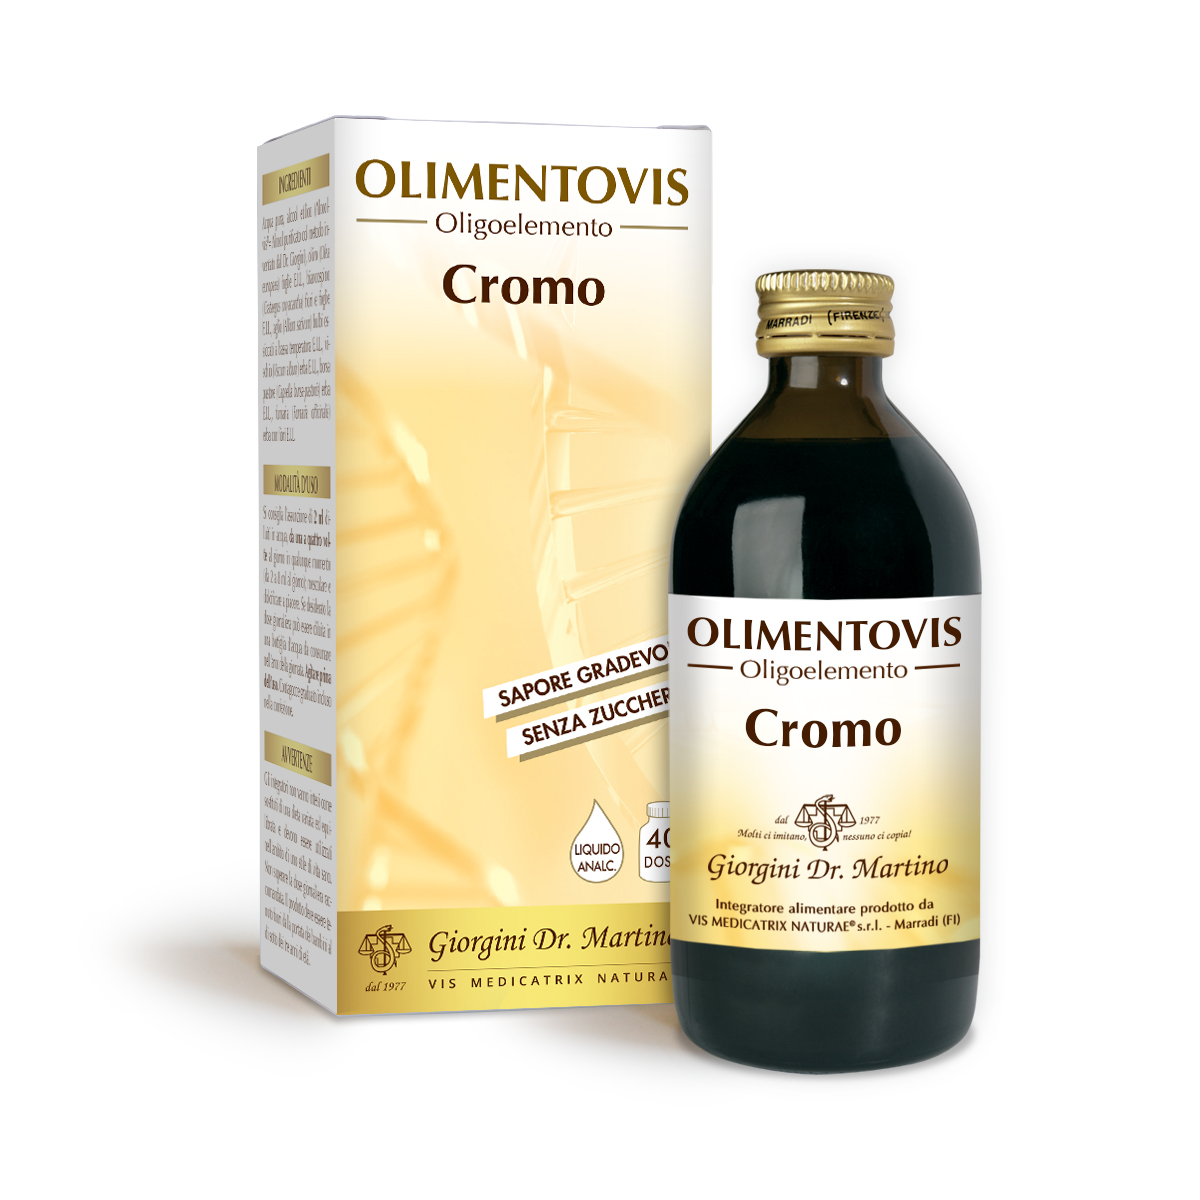 CROMO Olimentovis 200 ml